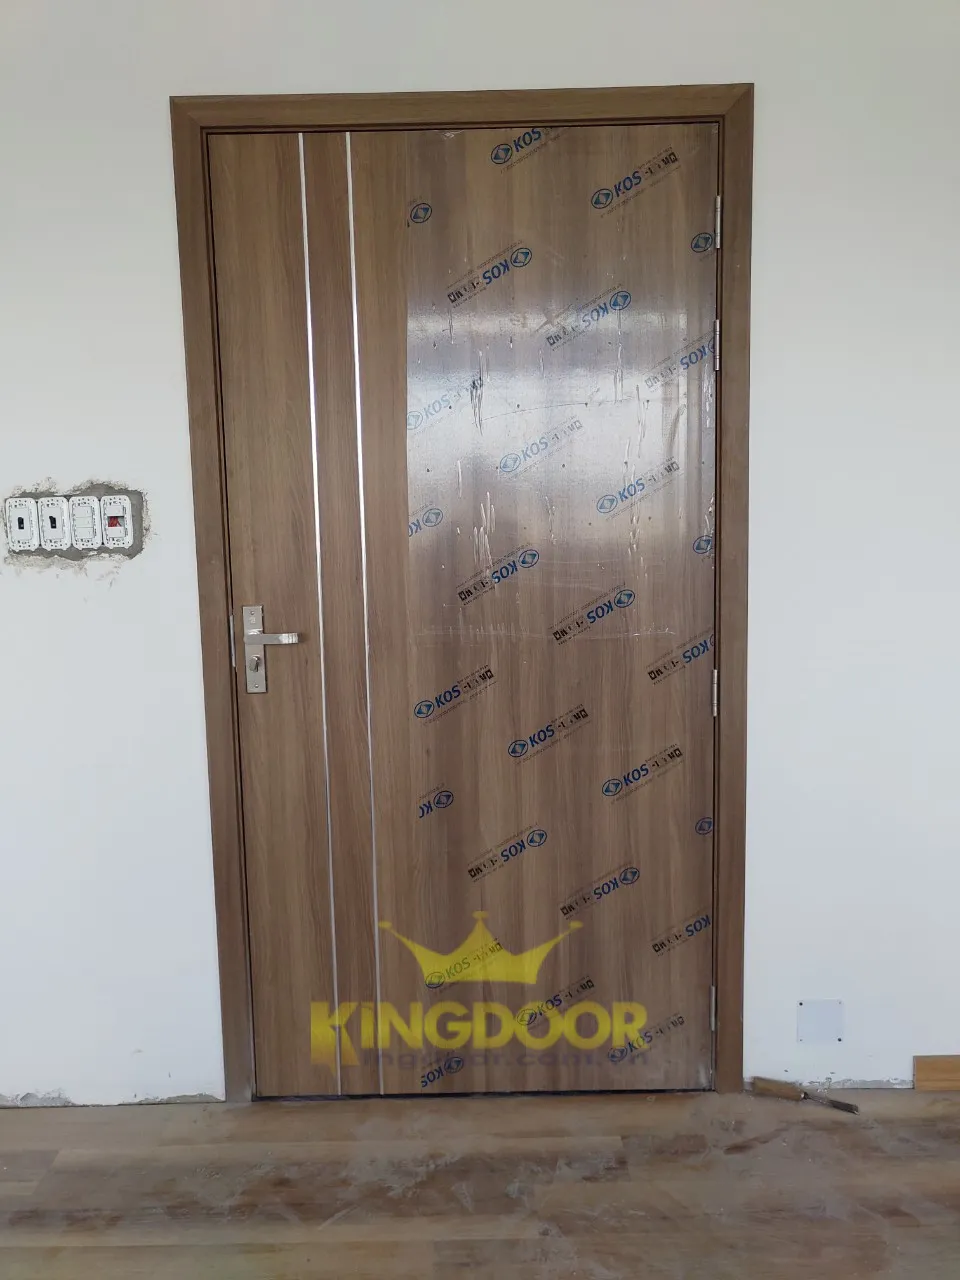 Kingdoor lắp dựng hoàn thiện mẫu cửa nhựa ABS Hàn Quốc tại Thủ Đức.